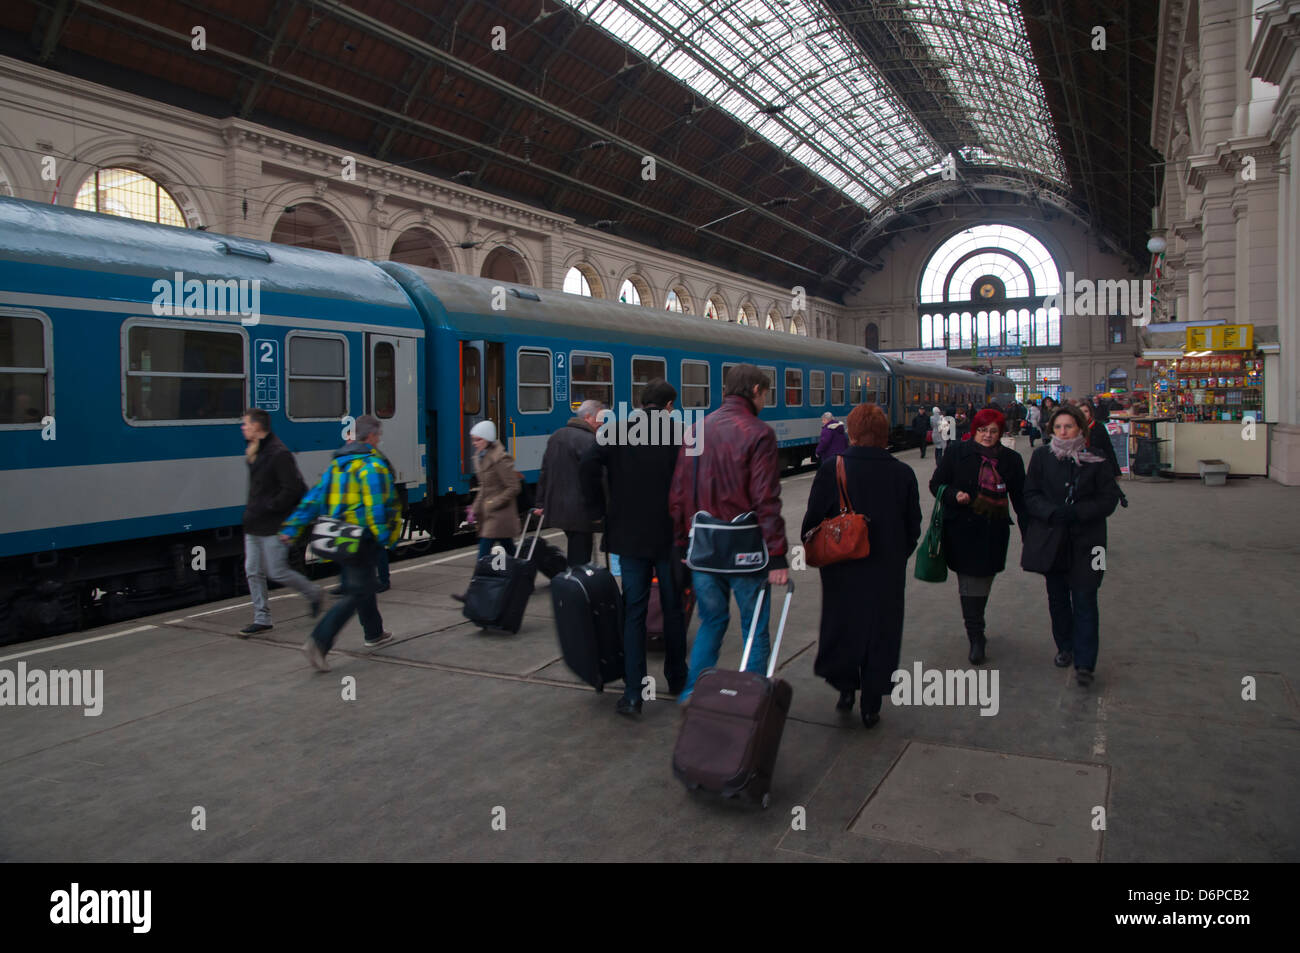 Keleti railway station Budapest Hungary Europe Stock Photo